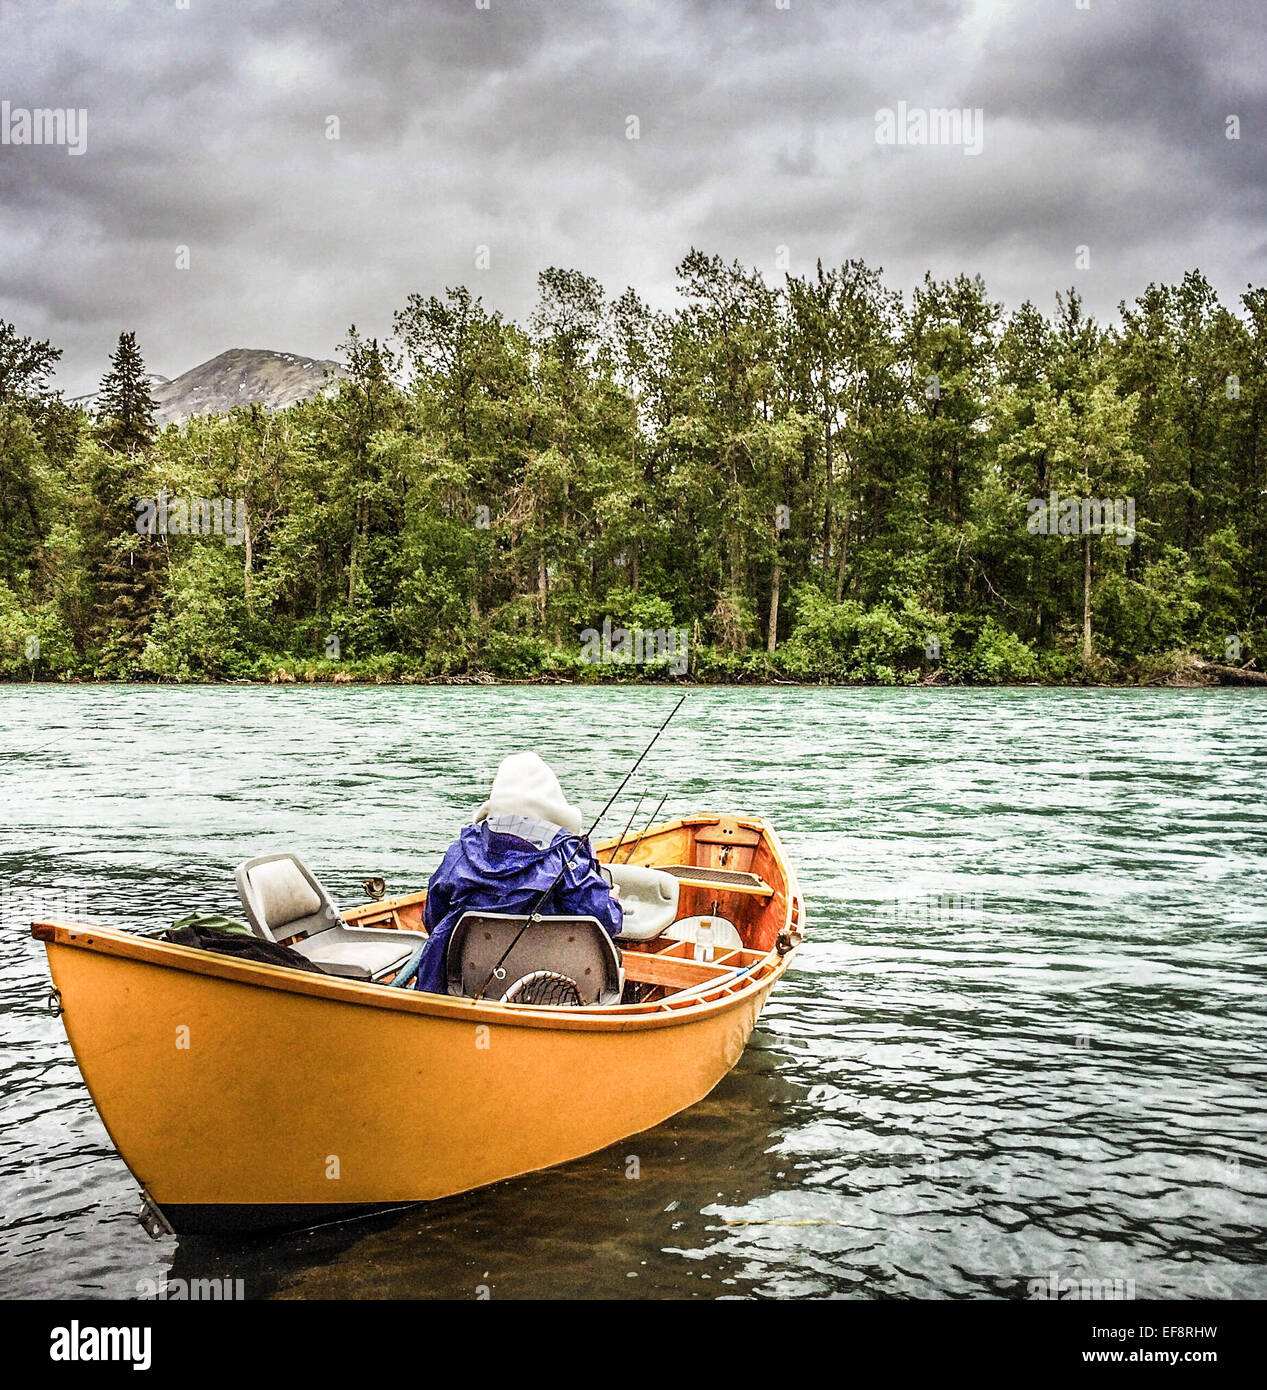 USA, Alaska, Russian River, Kenai, l'homme la pêche au large bateau jaune Banque D'Images